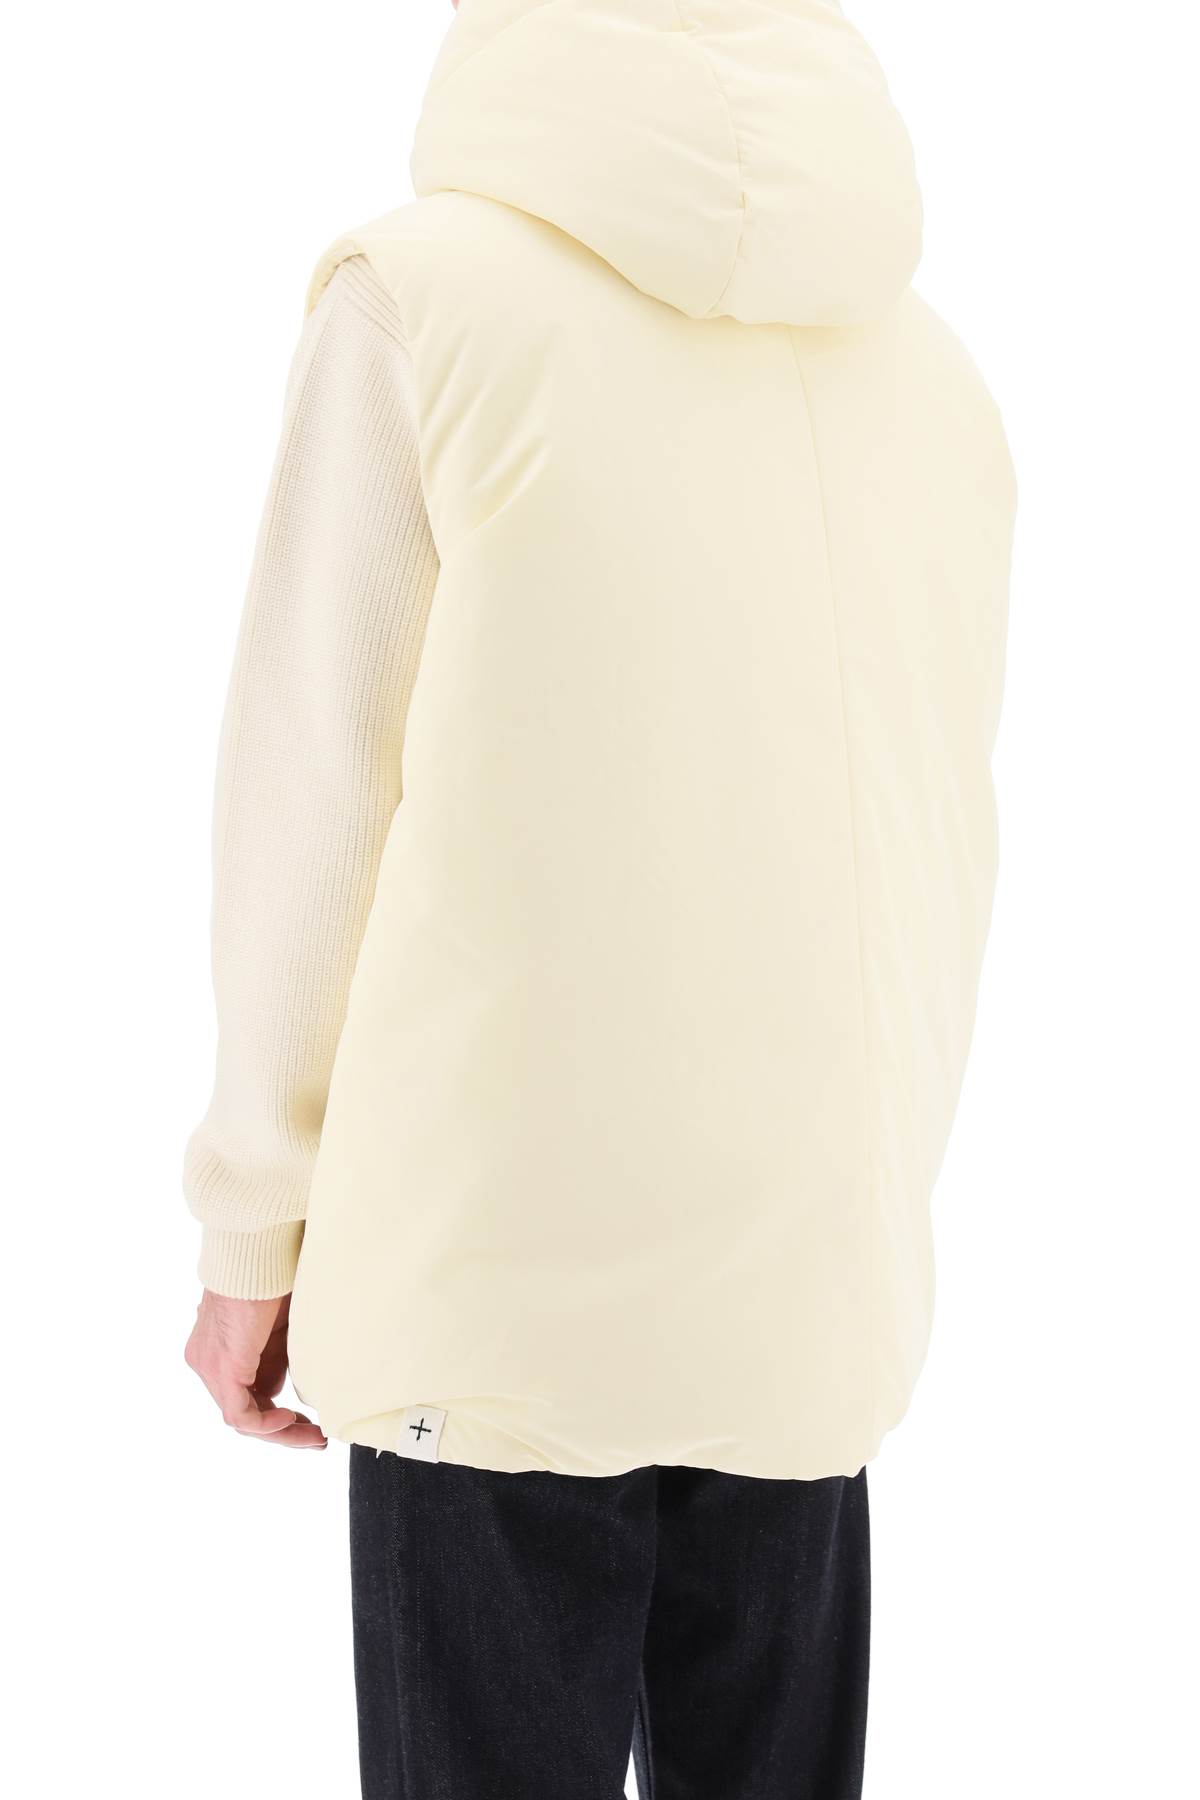 Shop Jil Sander Oversized Hooded Down Vest In Dune (white)